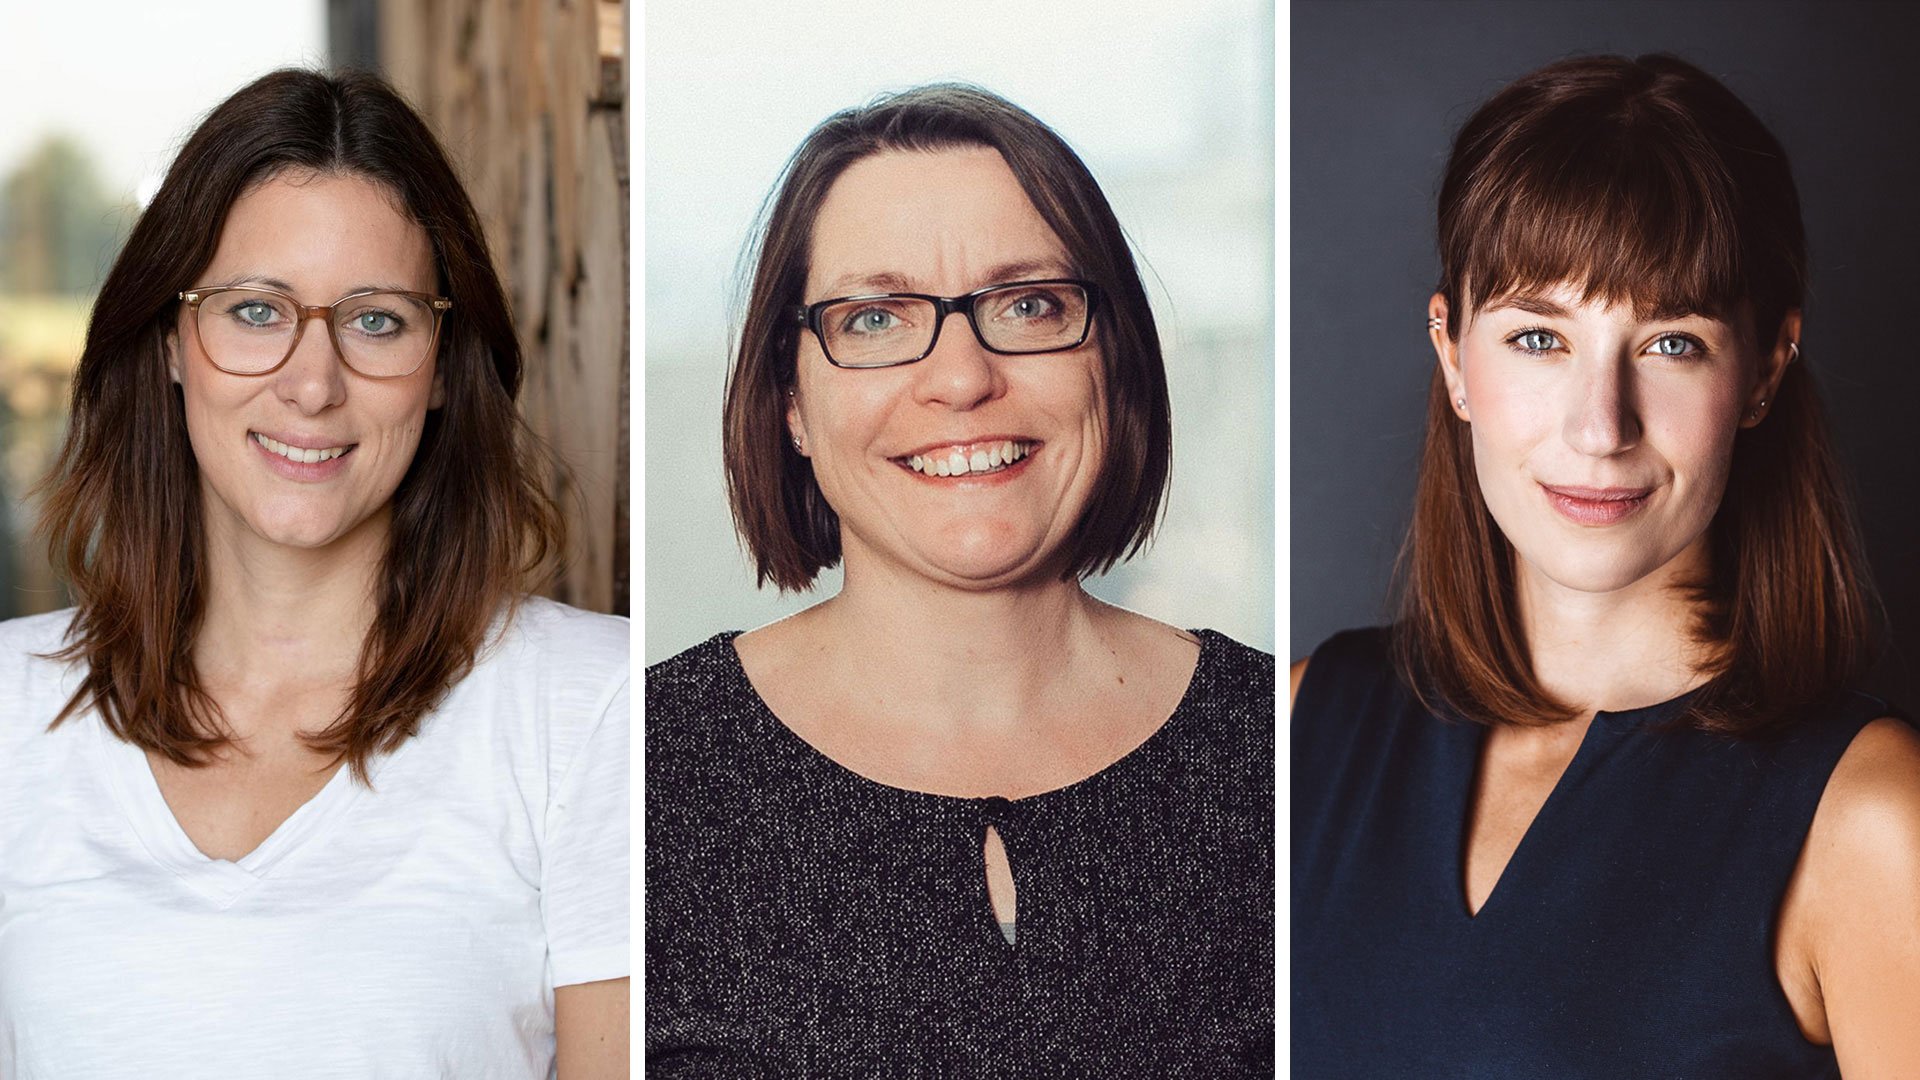 v.l.n.r: Katja Leenen, Jessica Künz und Michelle Spaar berichten von ihren Erfahrungen als Frau in der IT